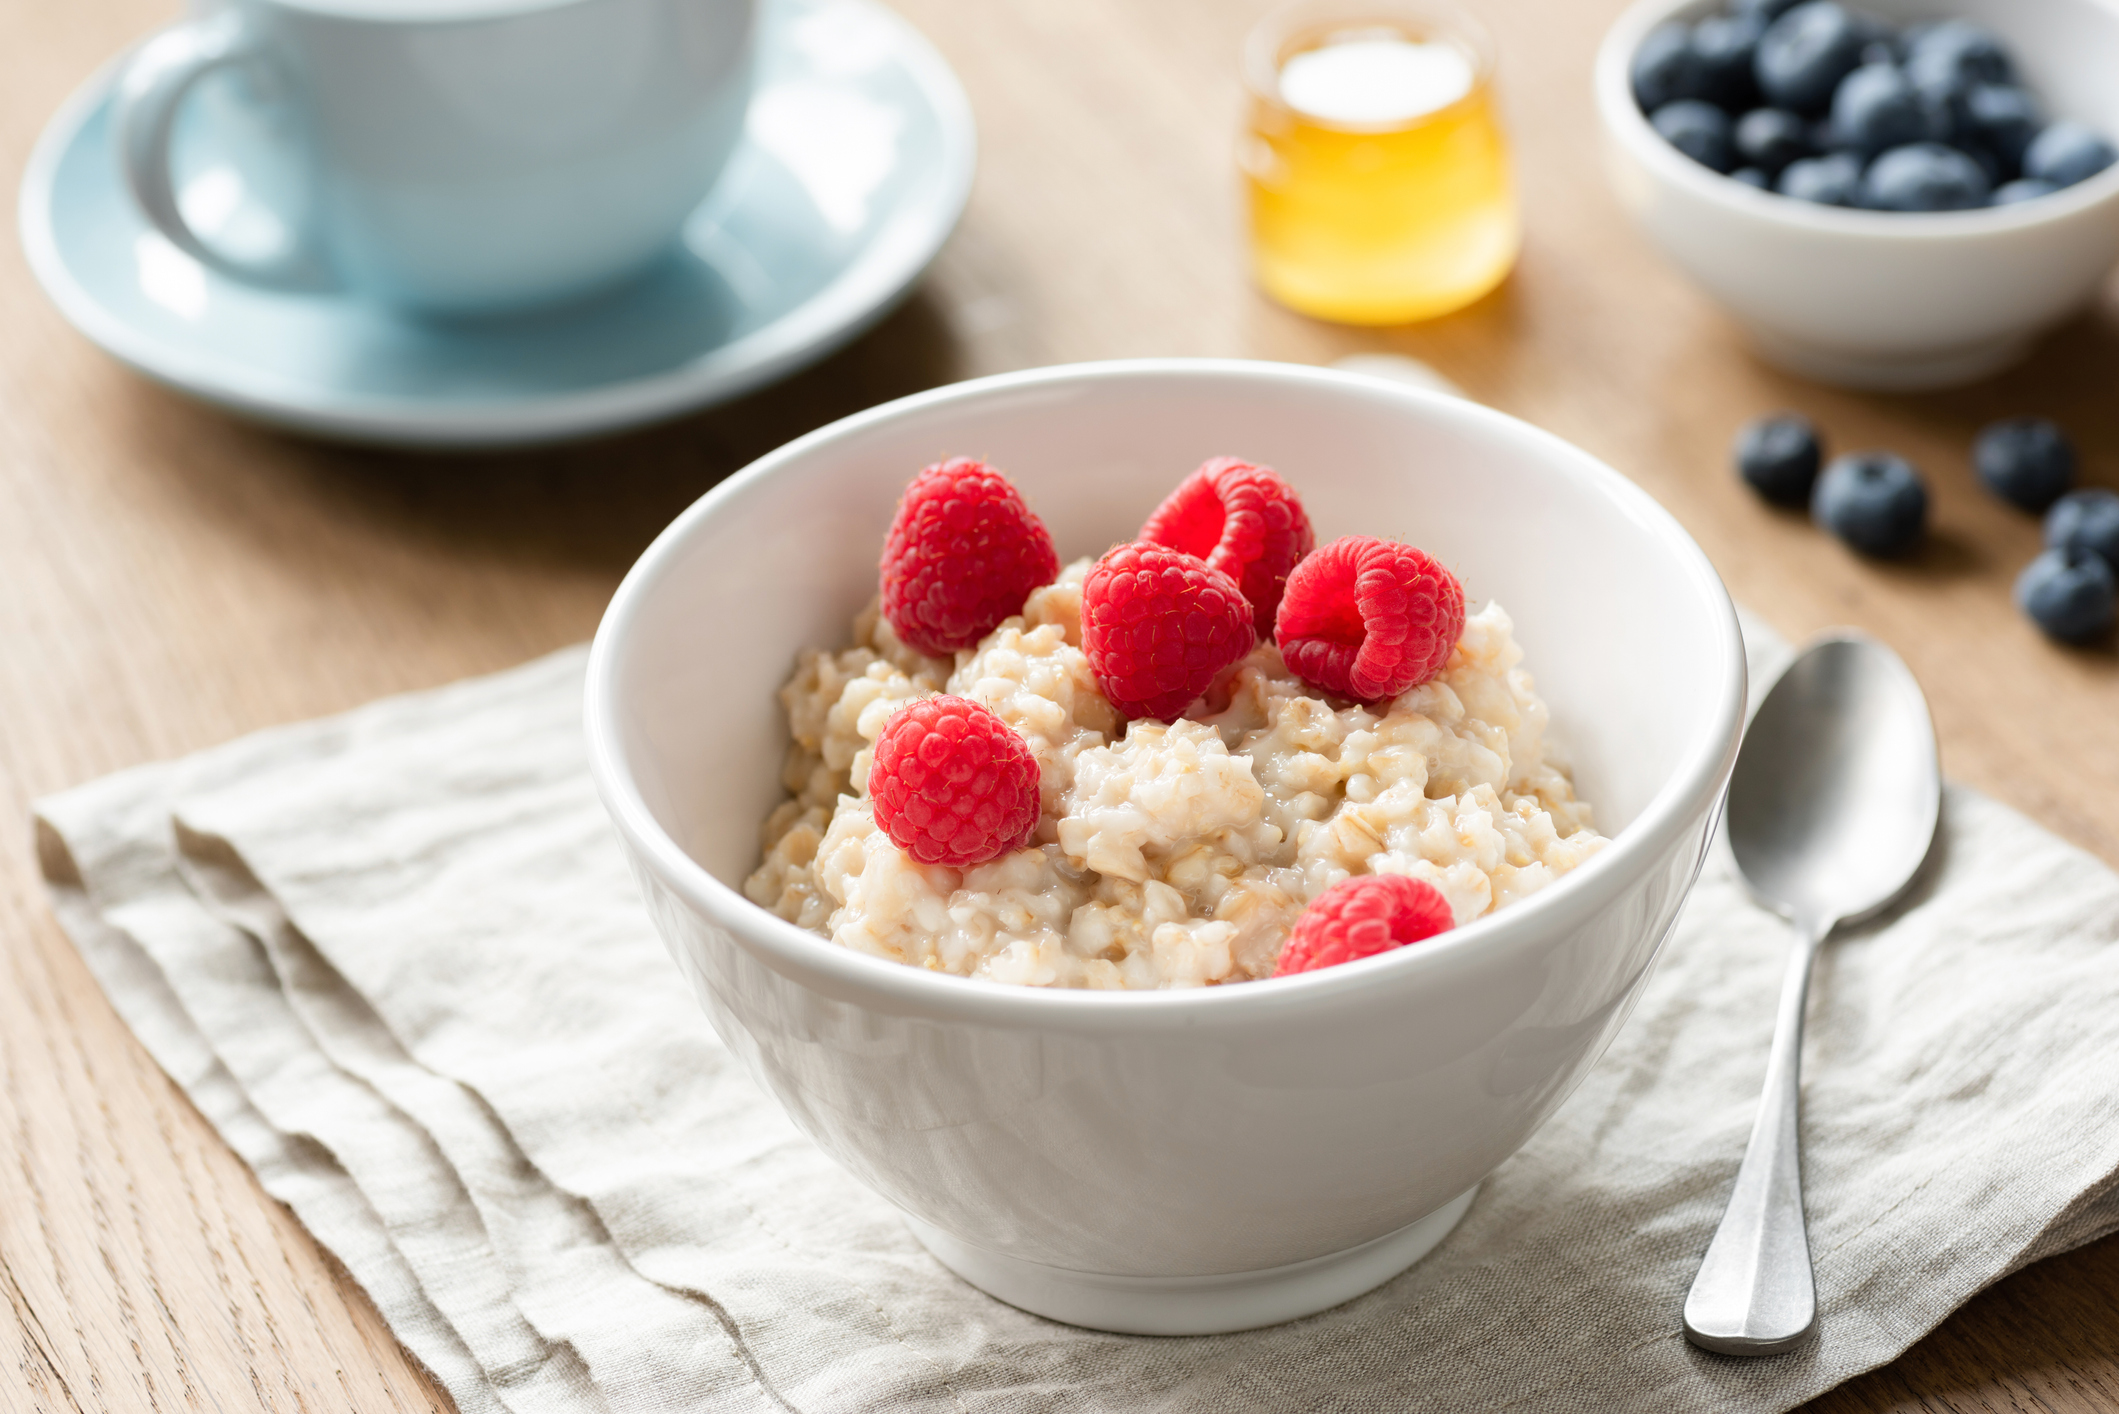  13 صبحانه کم کالری برای کاهش وزن